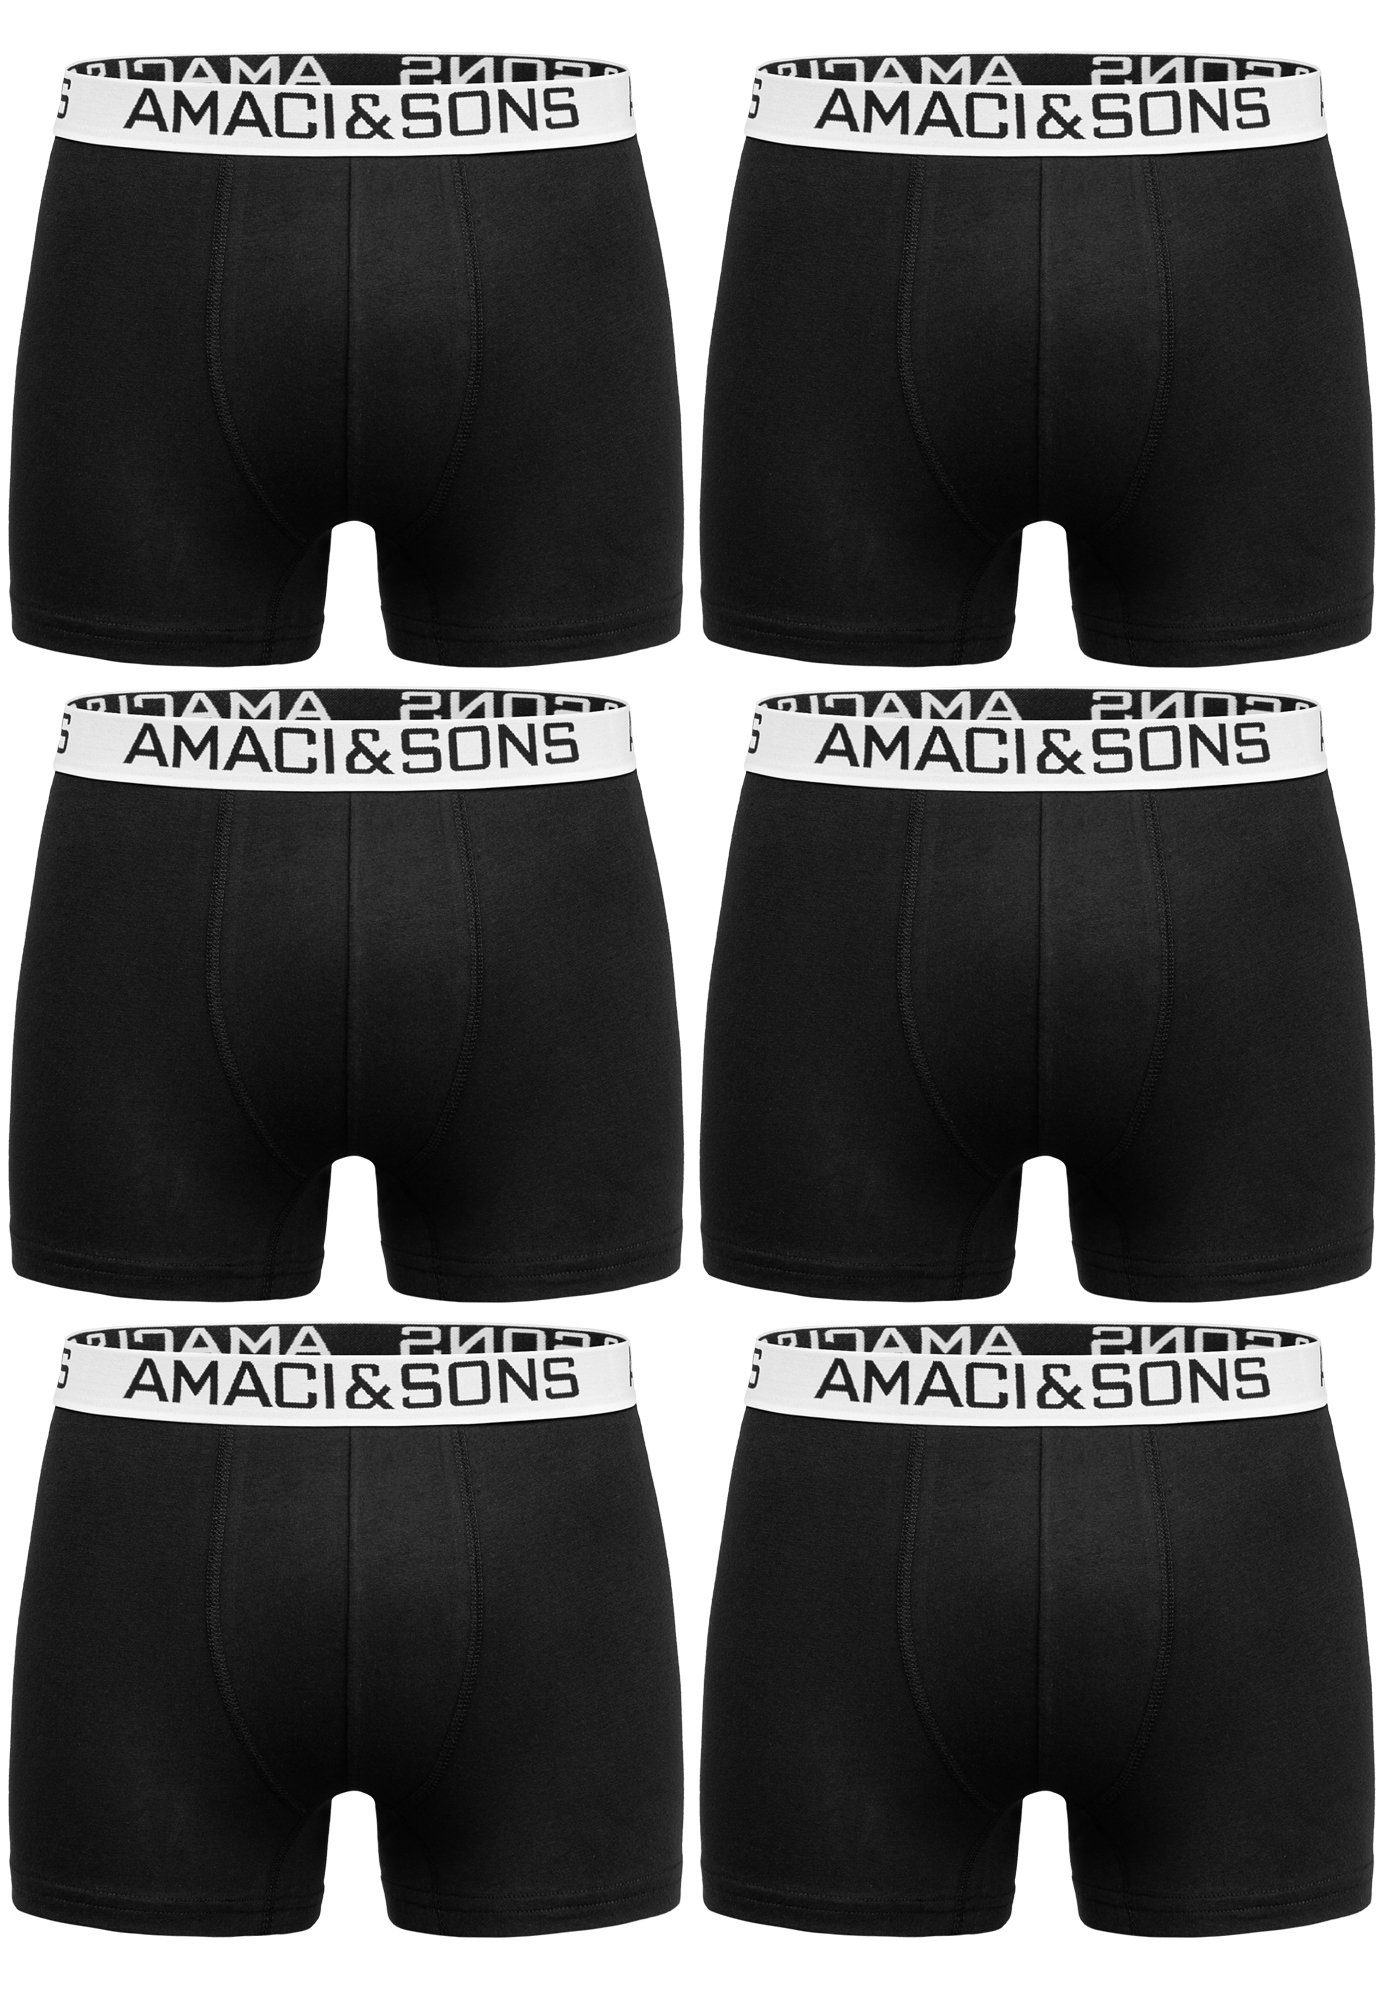 Unterwäsche WESTON (6er-Pack) Schwarz/Weiß Pack Amaci&Sons Männer Boxershorts Baumwolle Boxershorts Unterhose Herren 6er